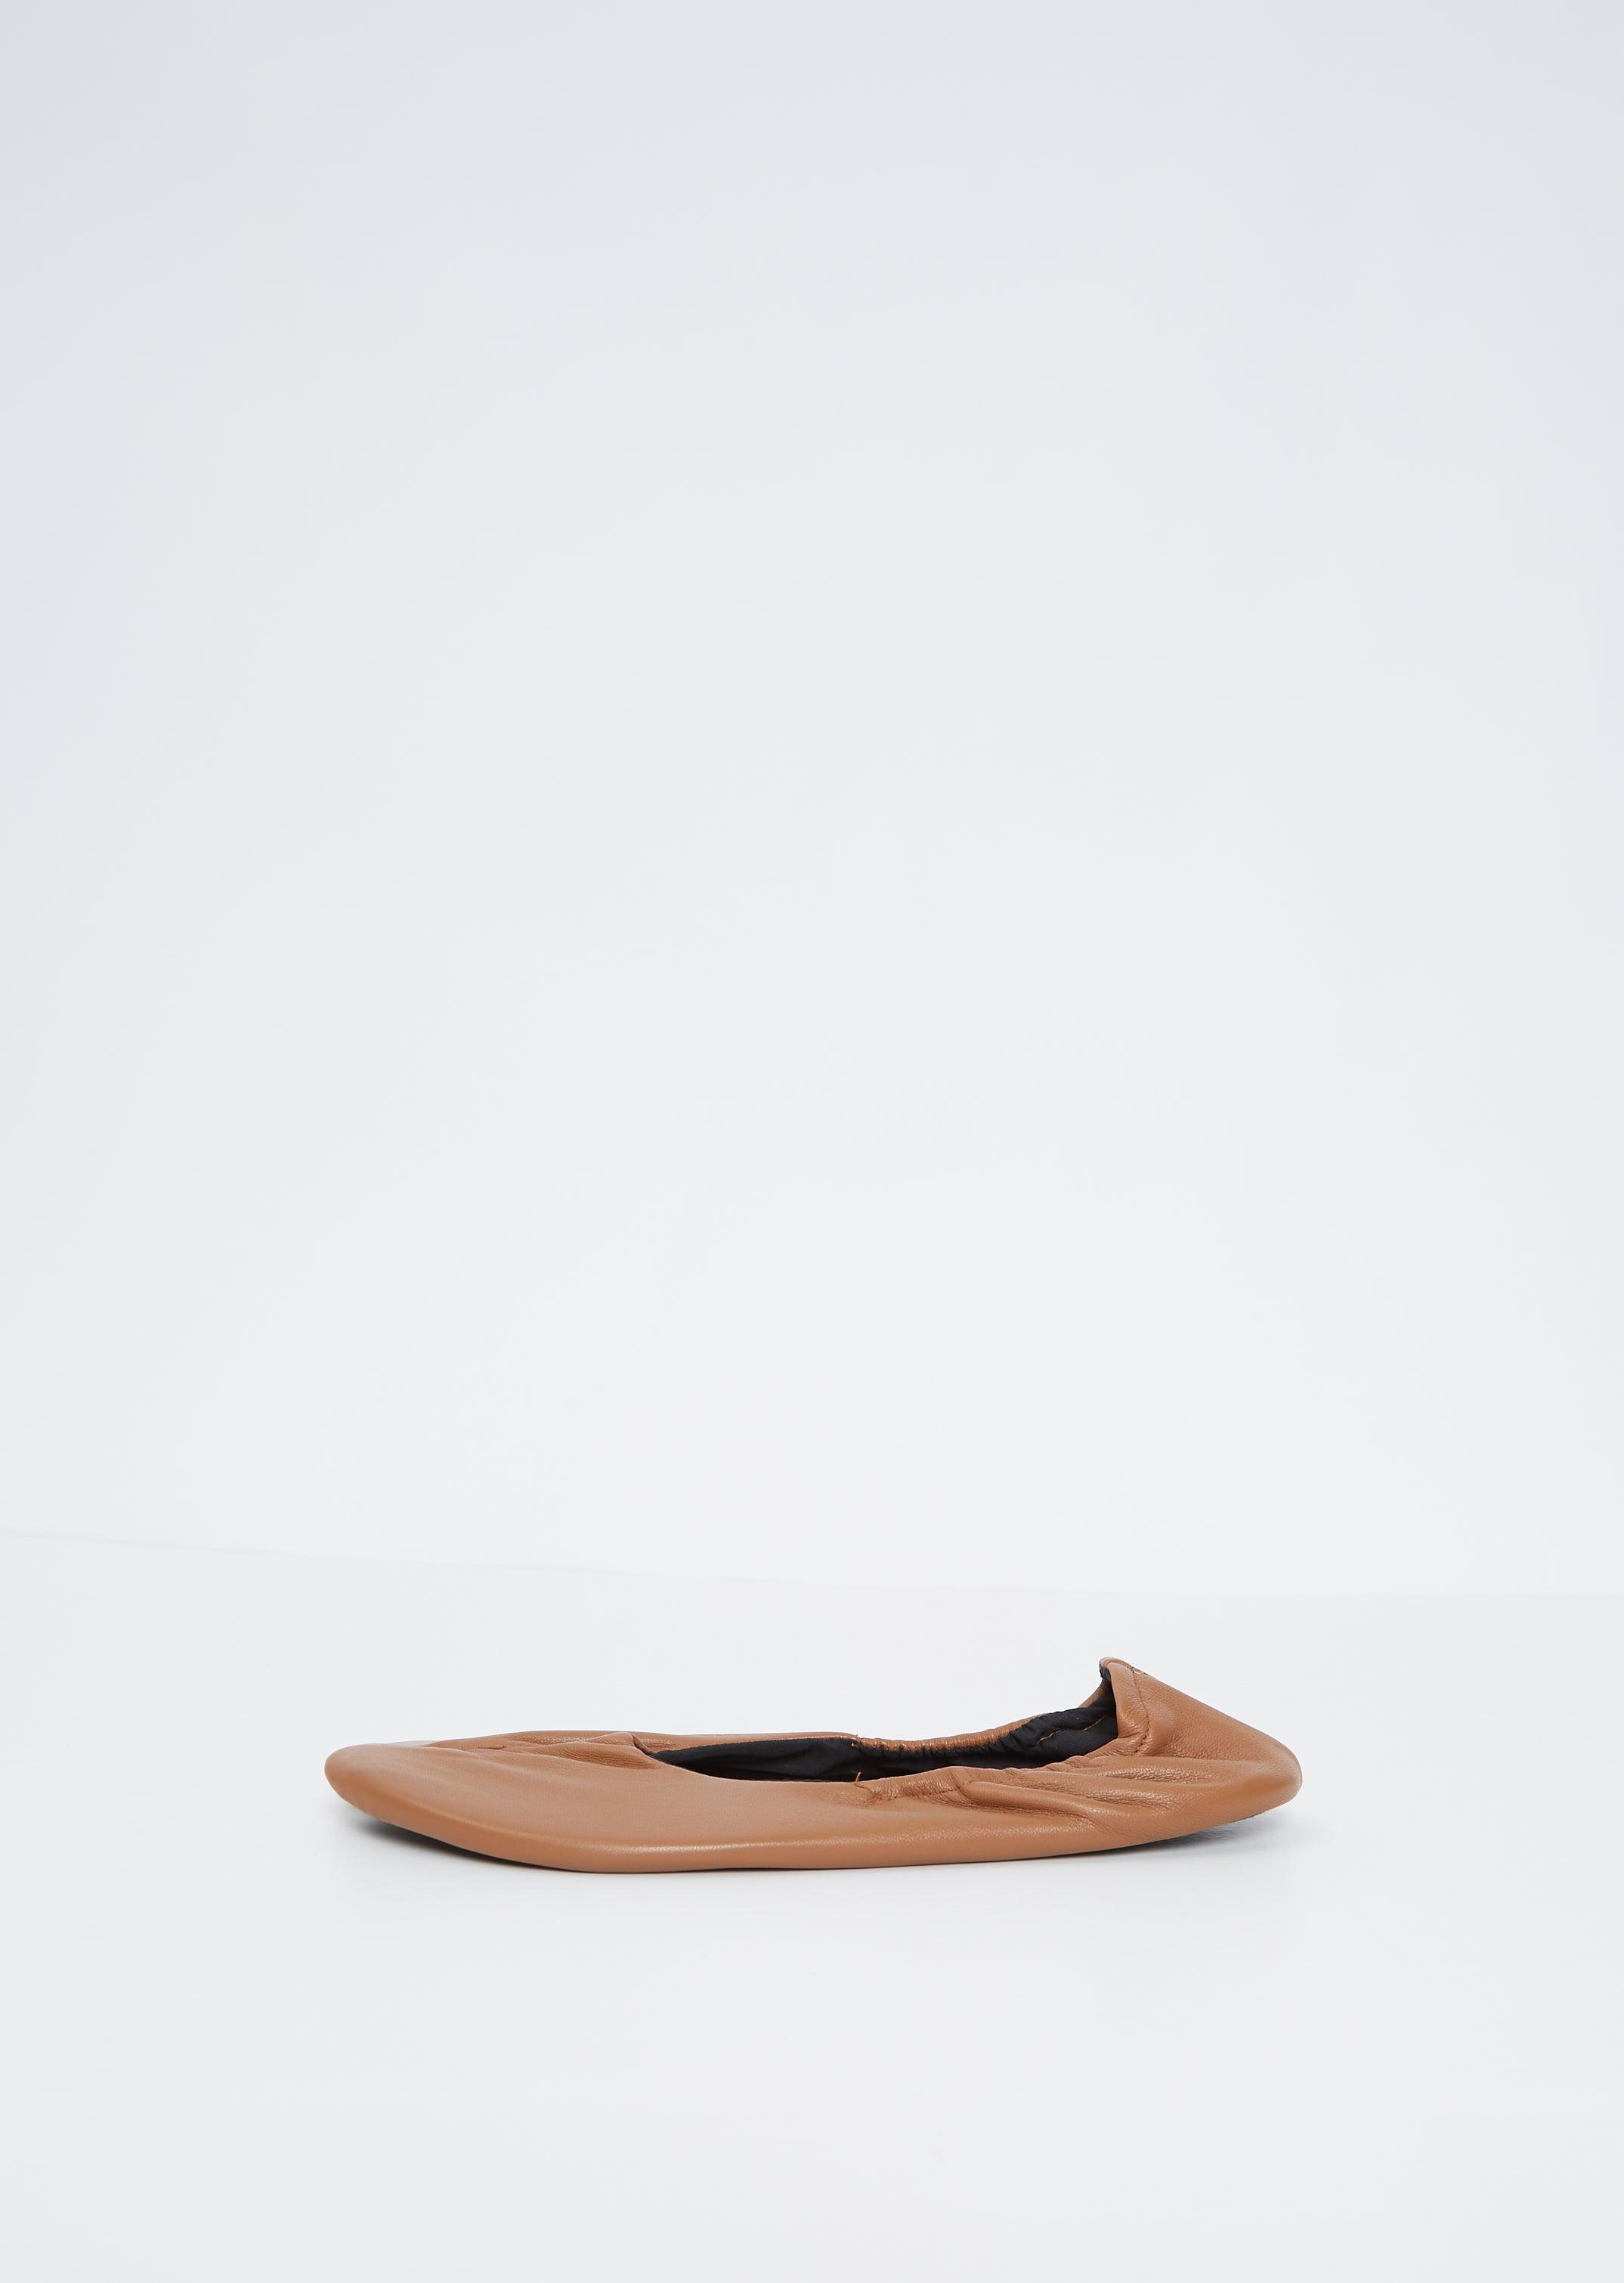 Y's Yohji Yamamoto Tabi Room Shoes in Brown | Lyst